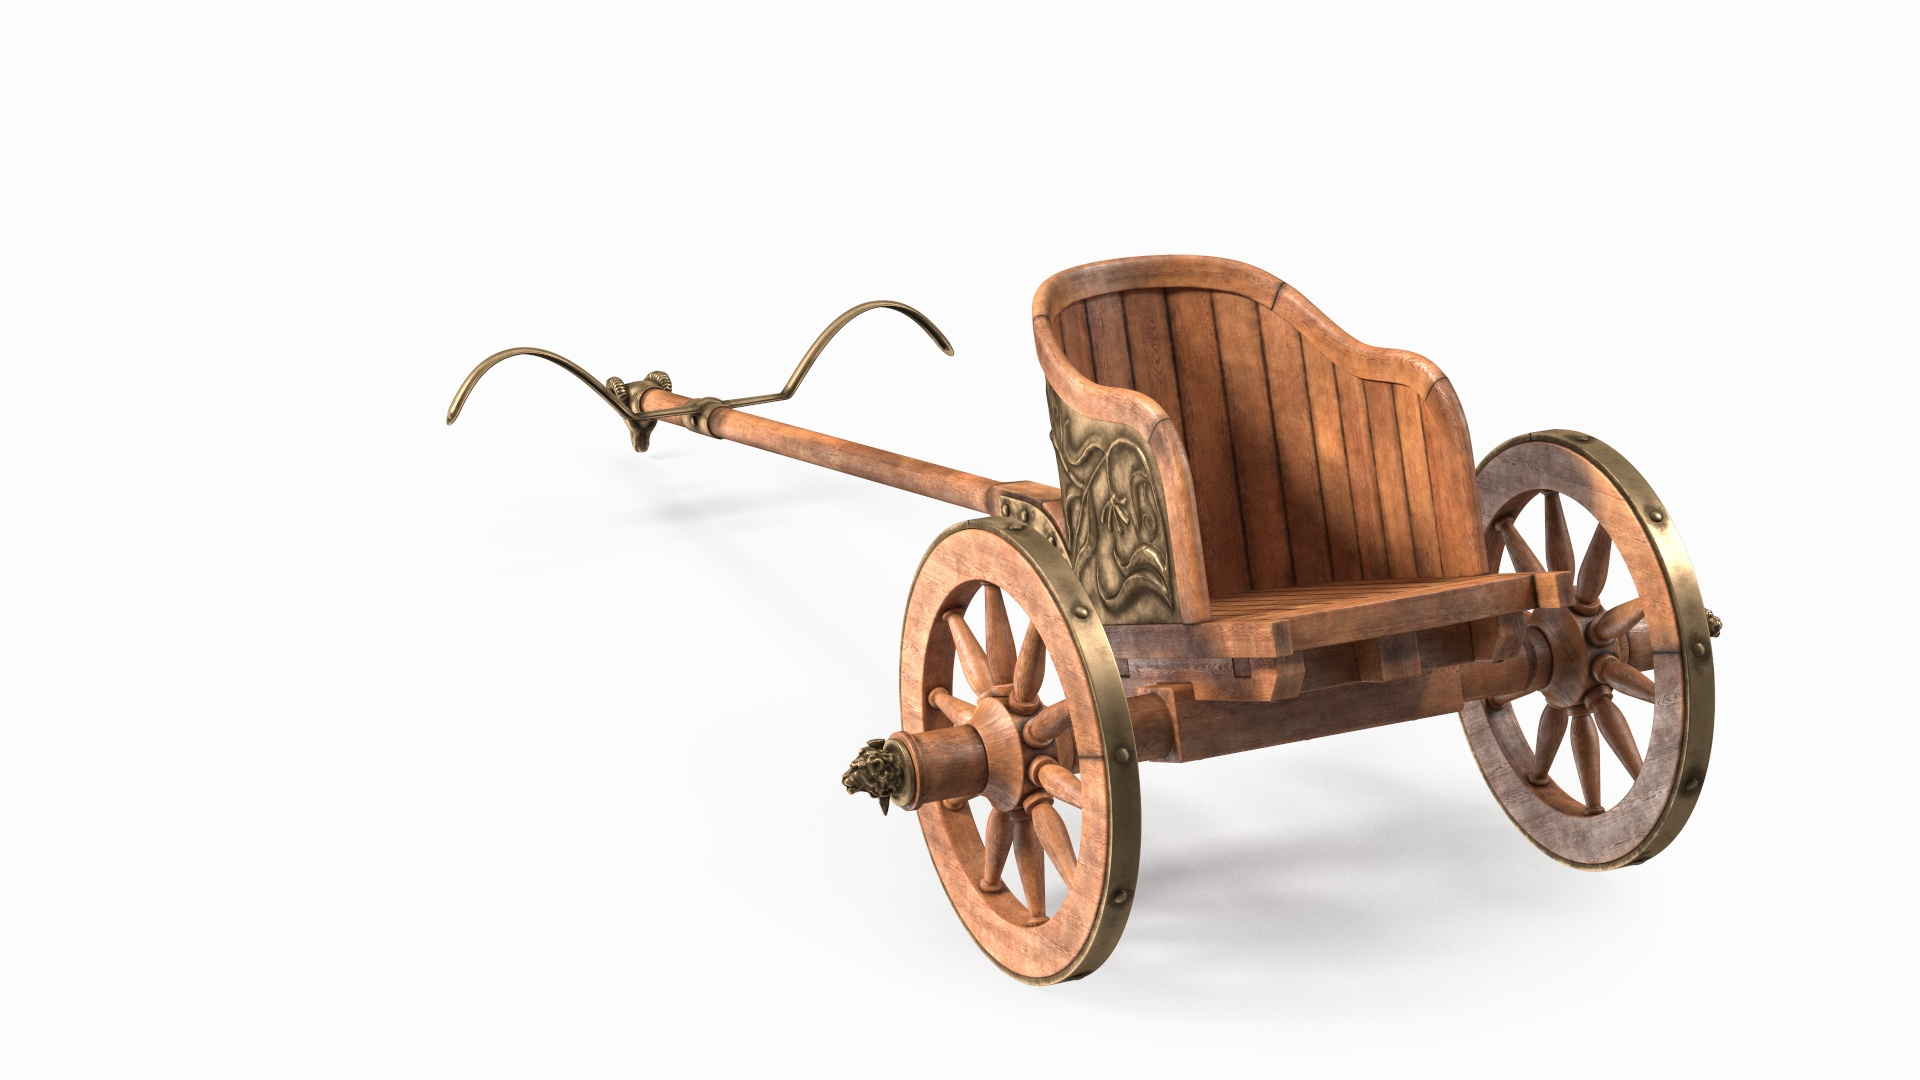 3D model Roman Chariot https://p.turbosquid.com/ts-thumb/jJ/vQW590/1y/roman_chariot_360/jpg/1676959166/1920x1080/turn_fit_q99/f001f2ff9a2da617c18c6266891e6ae6f3b77ddf/roman_chariot_360-1.jpg